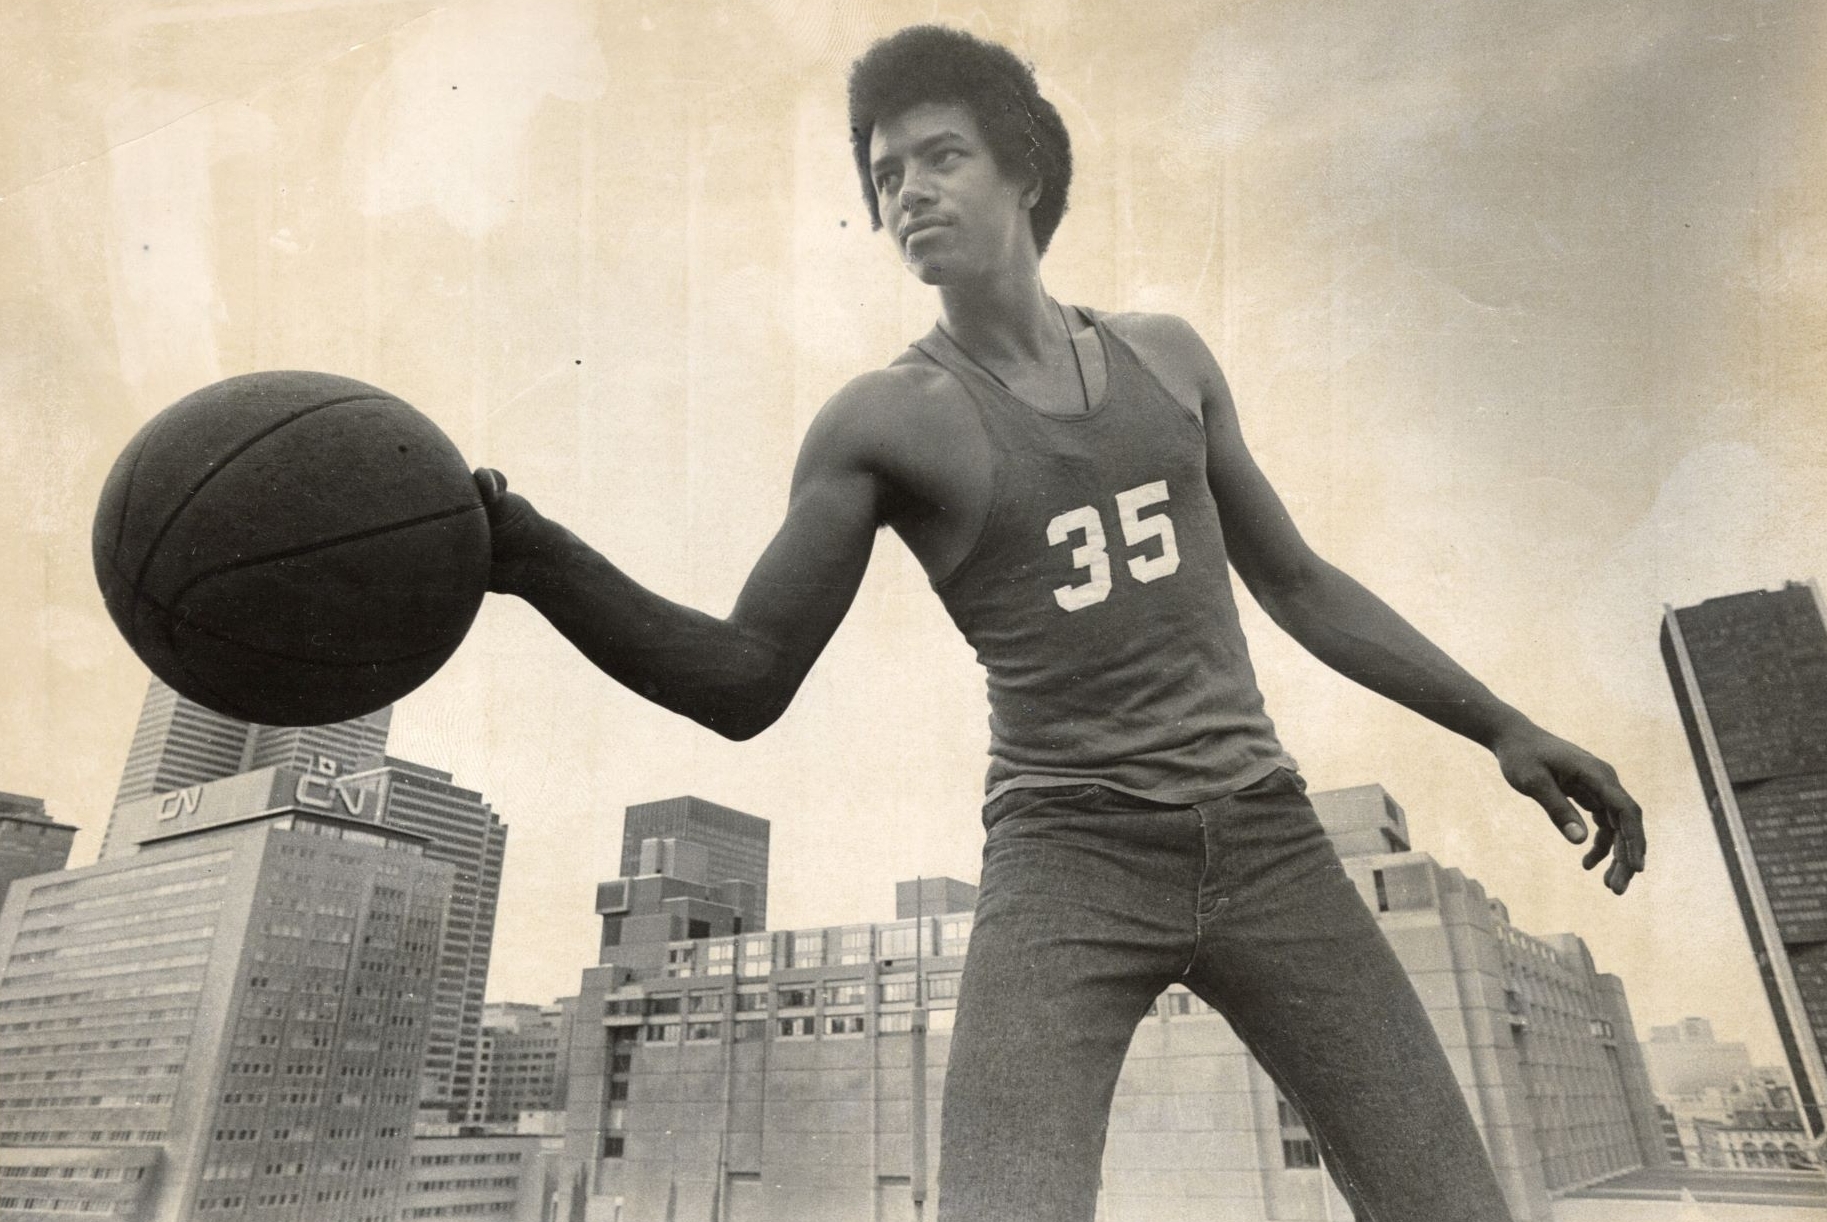 Une photo vintage en noir et blanc d'un jeune homme tenant un ballon de basket avec les gratte-ciel de la ville en arrière-plan, évoquant un sentiment de réussite sportive historique.